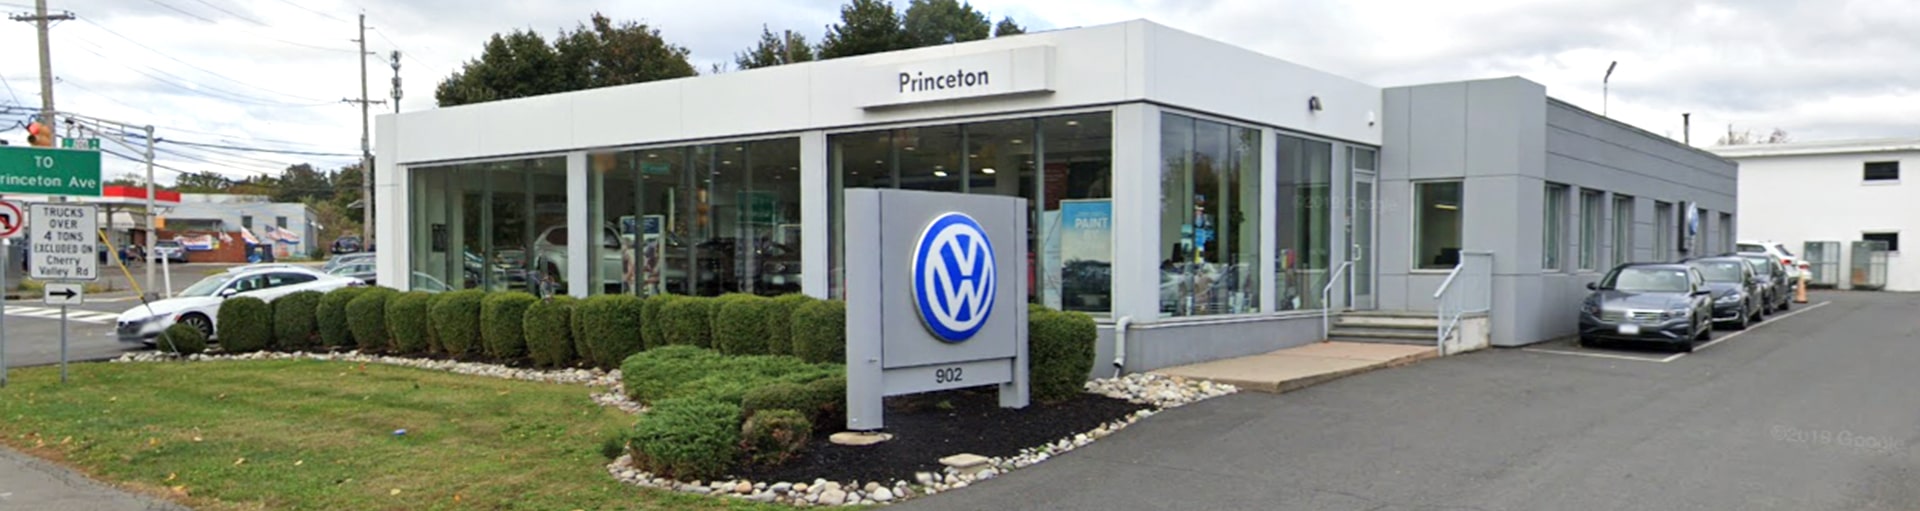 Volkswagen Princeton Brake Pad Replacement Service